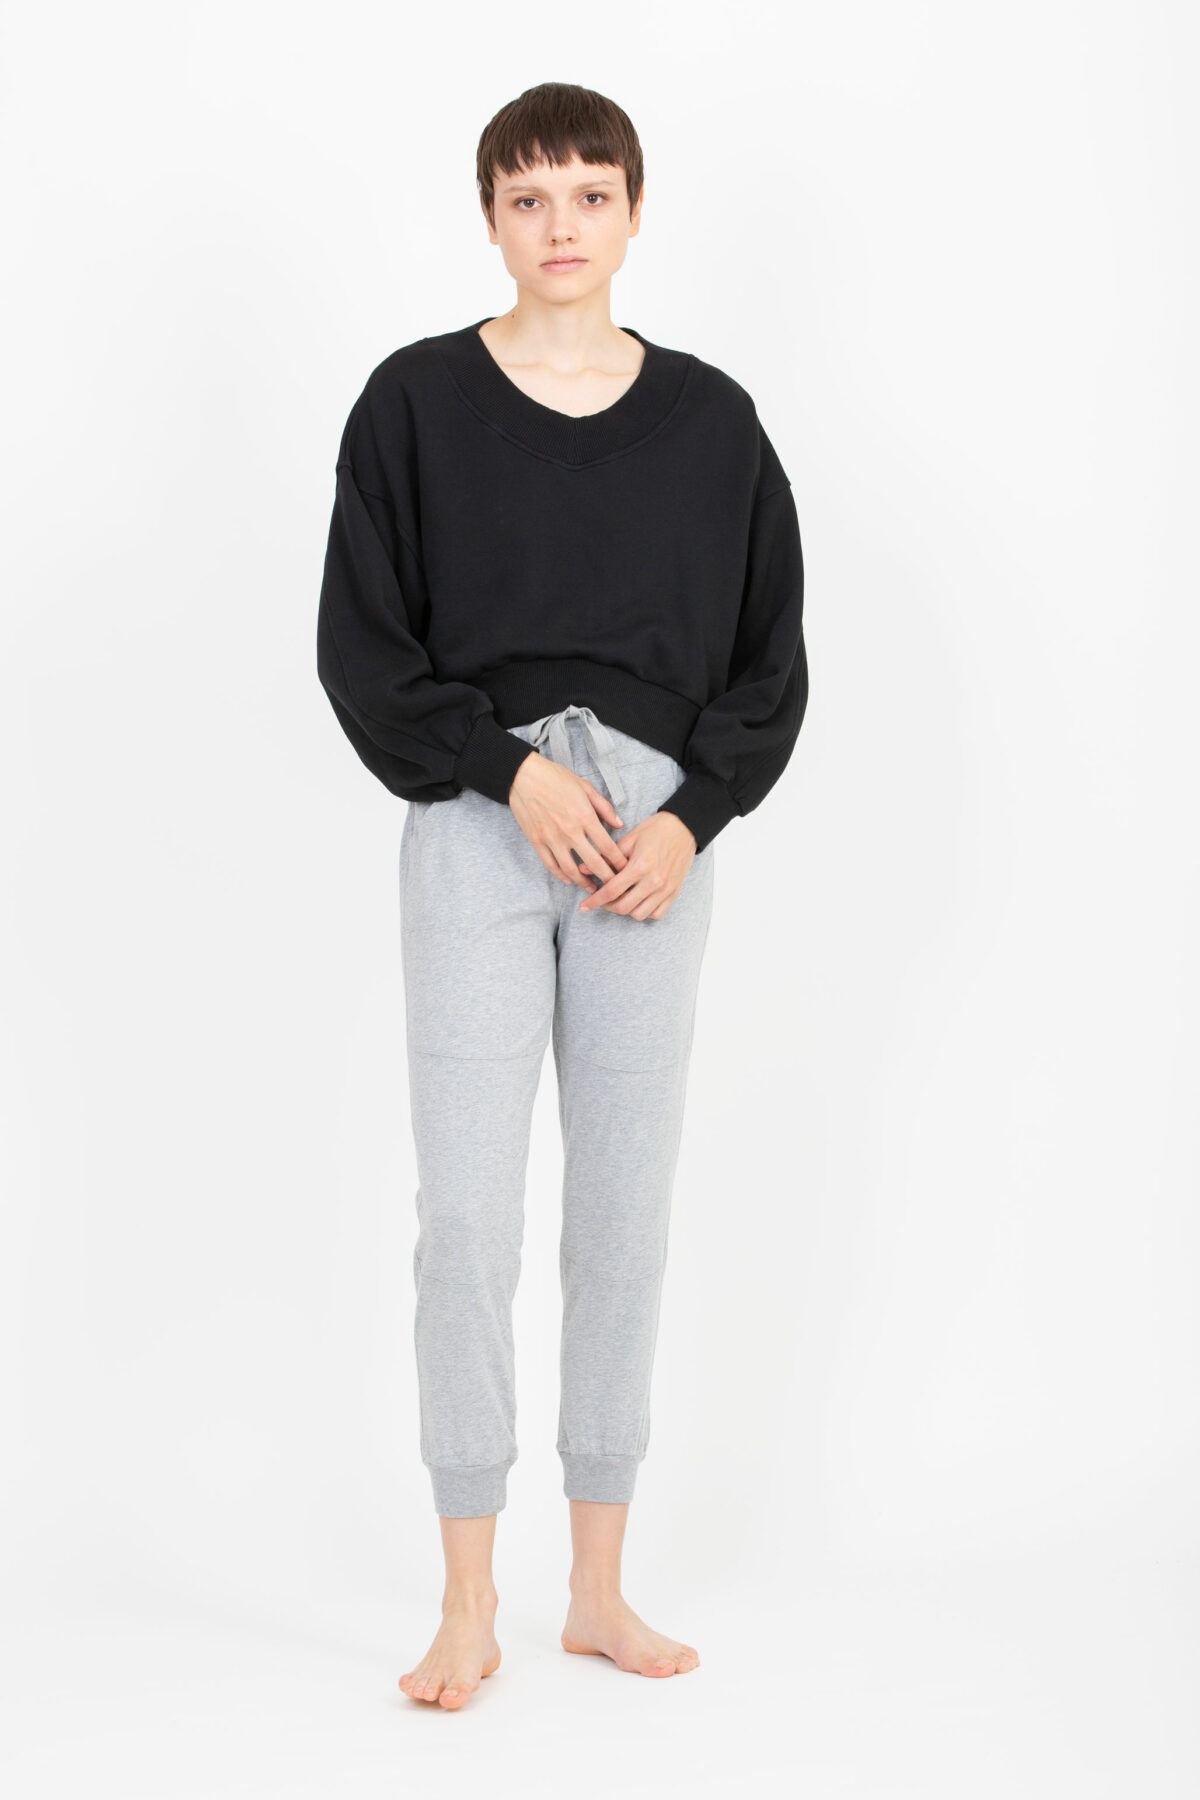 b74104-comfort-black-sweatshirt-round-crop-vneck-deha-matchboxathens